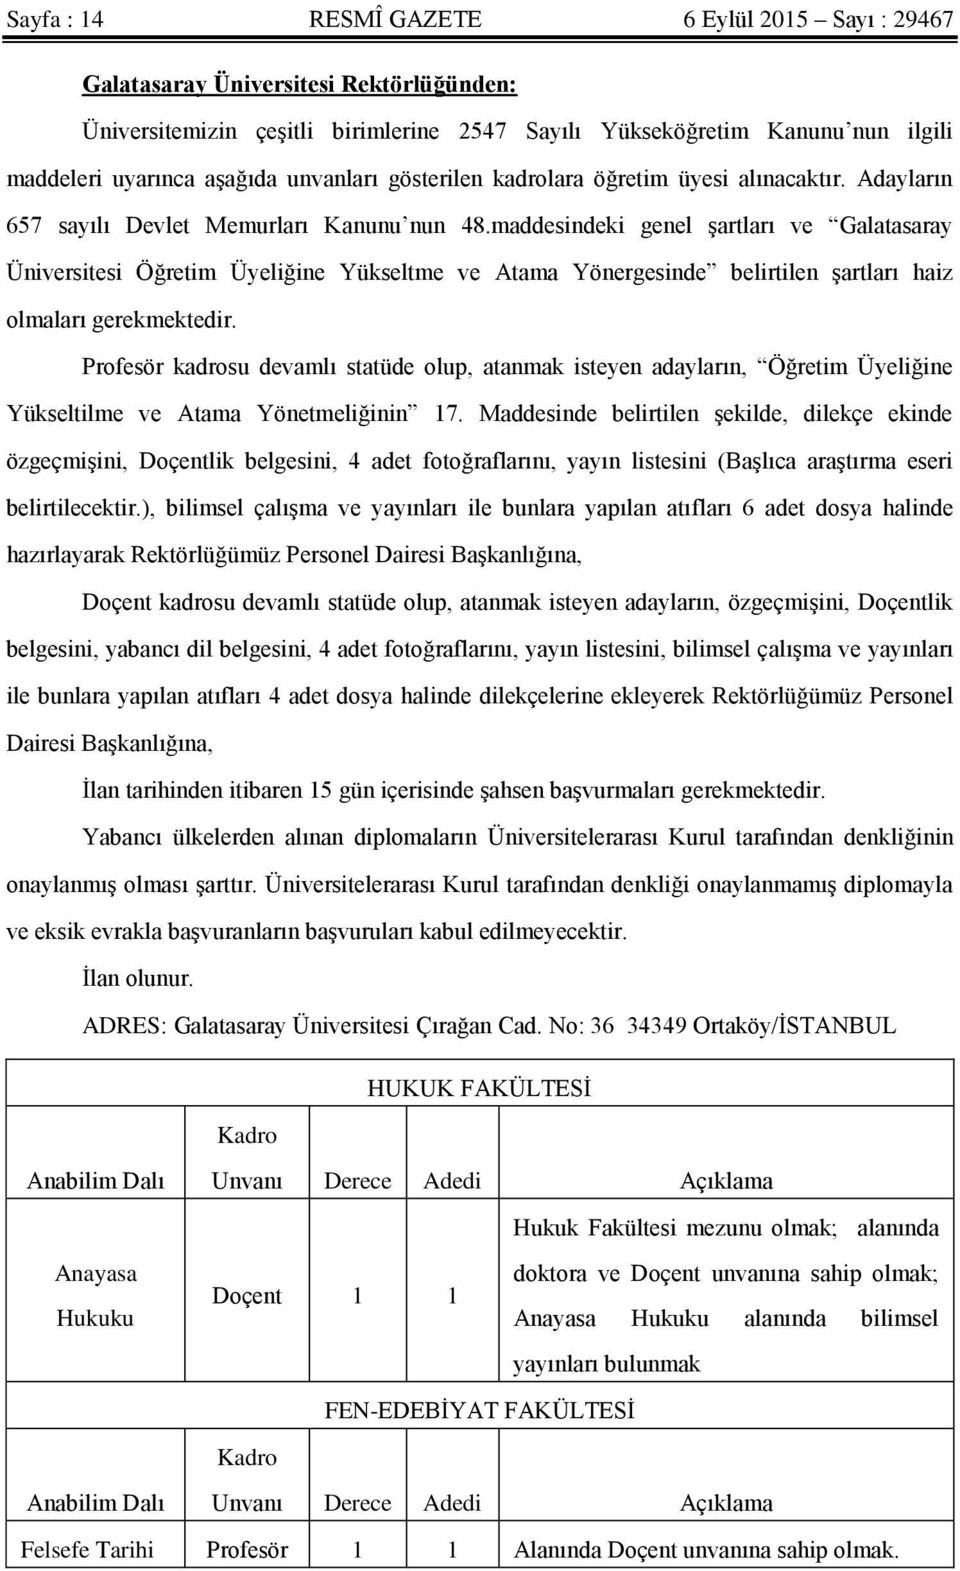 maddesindeki genel Ģartları ve Galatasaray Üniversitesi Öğretim Üyeliğine Yükseltme ve Atama Yönergesinde belirtilen Ģartları haiz olmaları gerekmektedir.